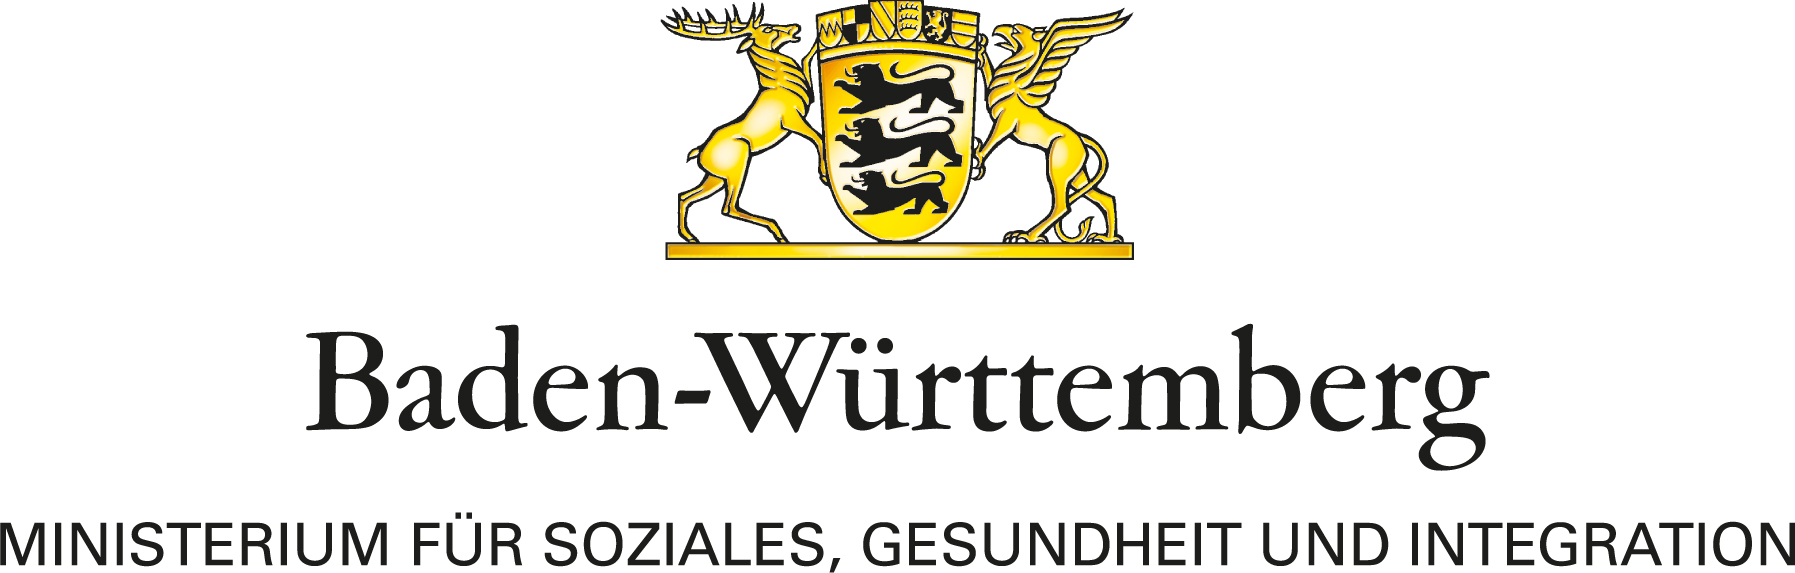 Zu sehen ist das offizielle Logo des Ministeriums für Soziales, Gesundheit und Integration Baden-Württemberg.